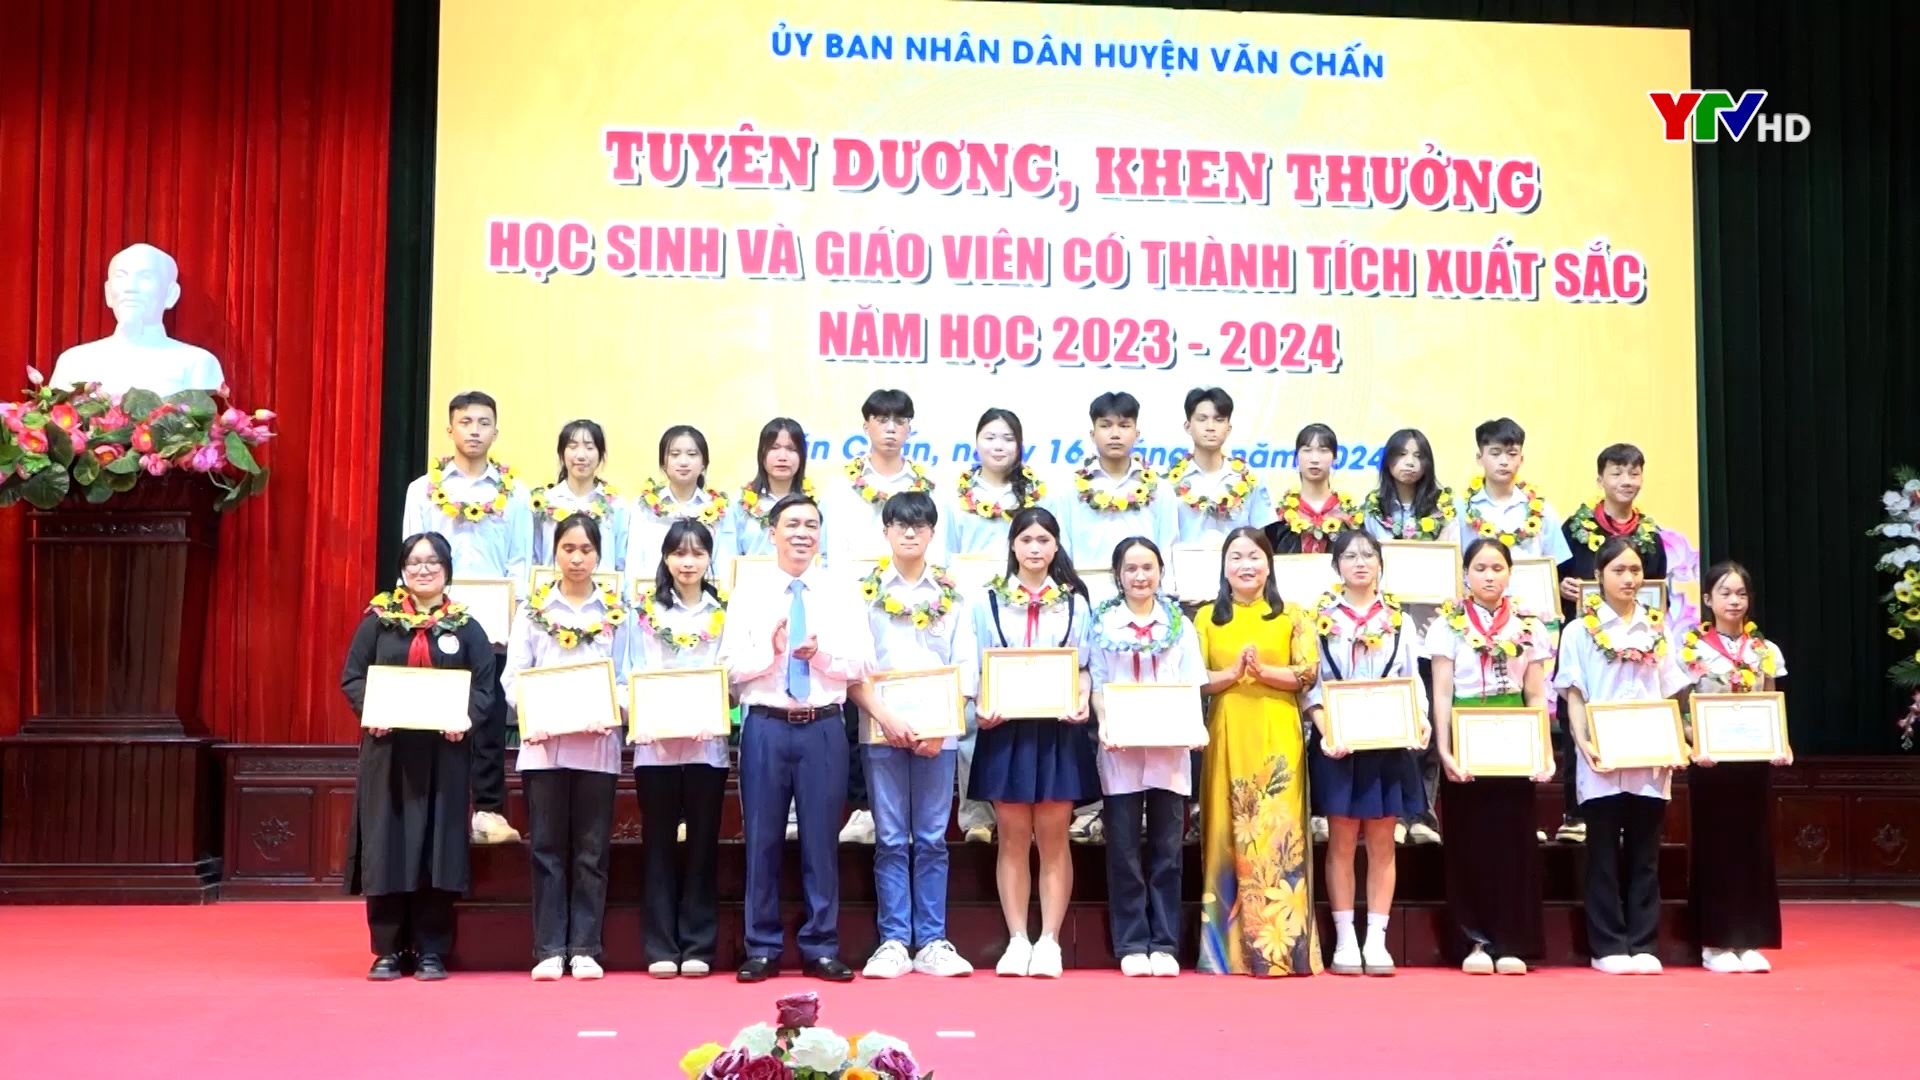 Văn Chấn tuyên dương, khen thưởng 770 học sinh, giáo viên có thành tích xuất sắc năm học 2023-2024